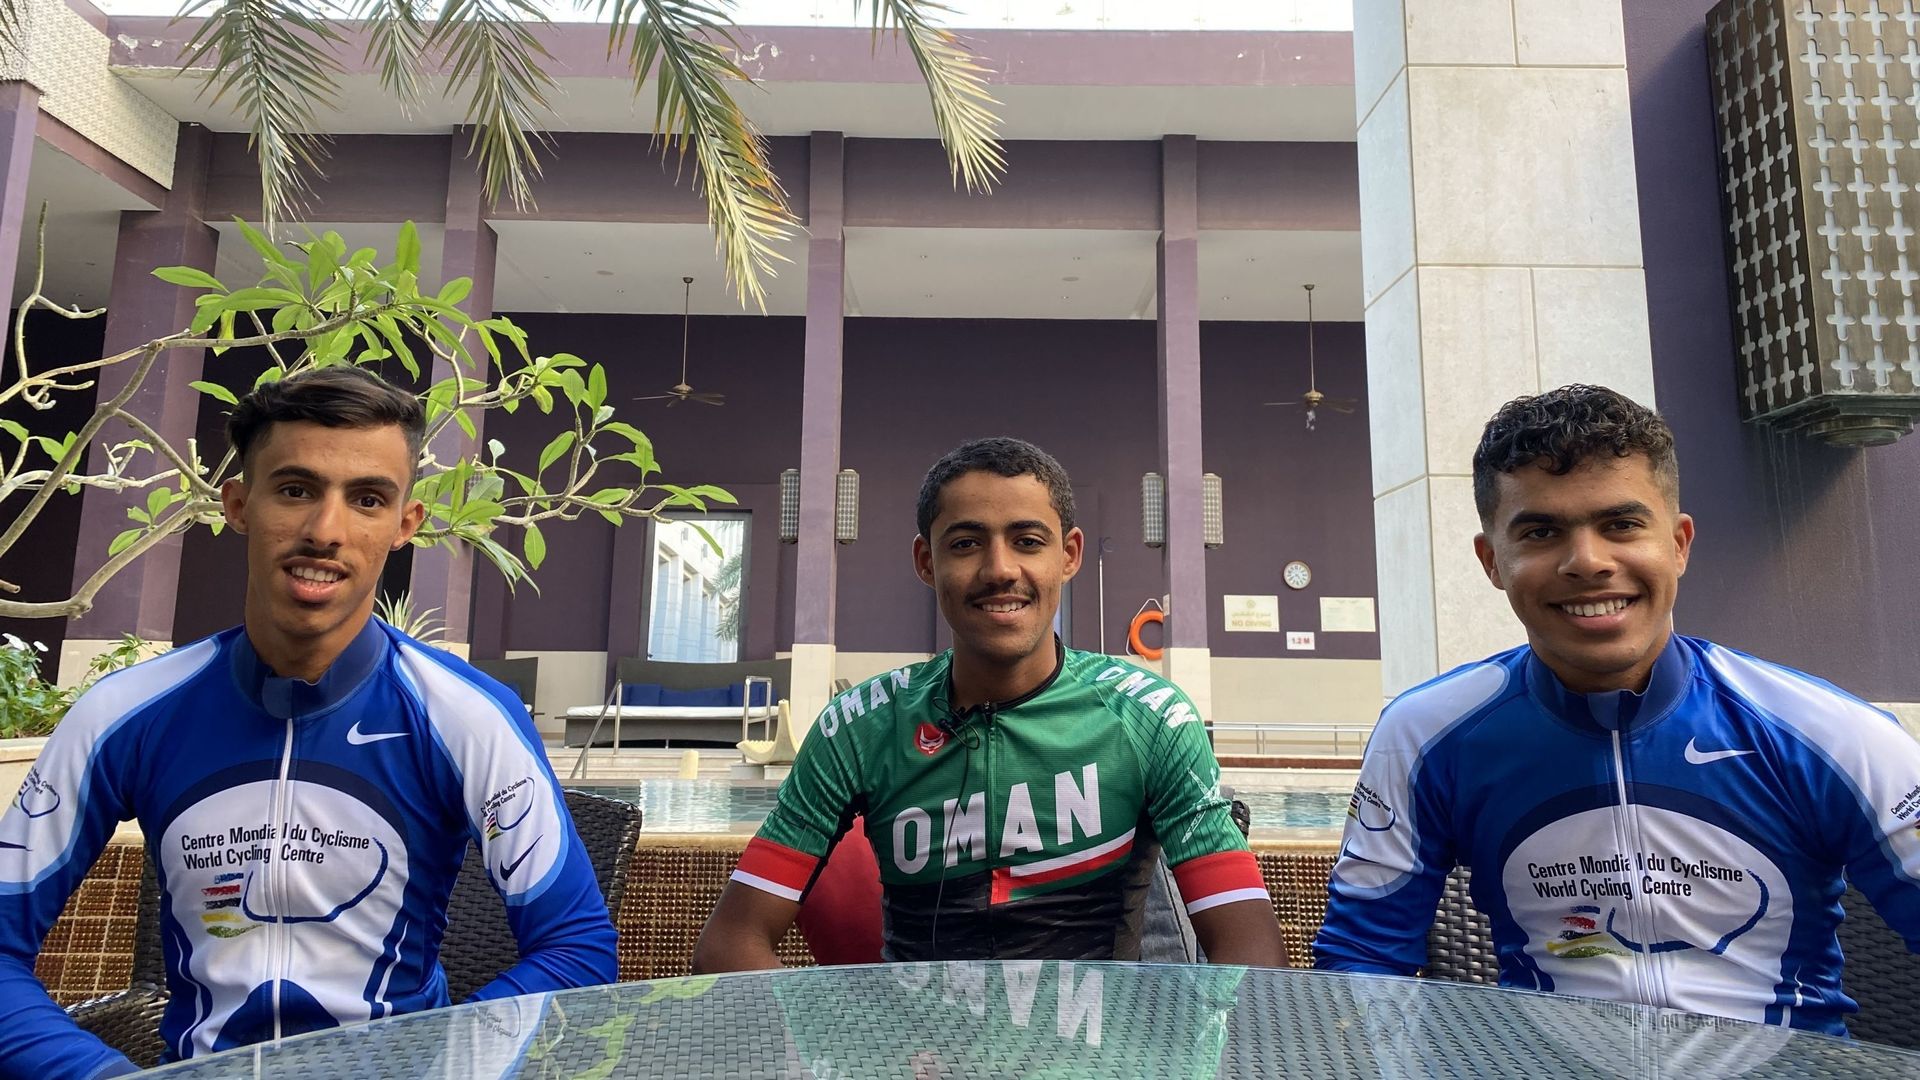 Said Al Rahbi, le champion d'Oman de cyclisme entouré de ses équipiers, Mohammed Al-Wahibi et Husam Al-Rawahi